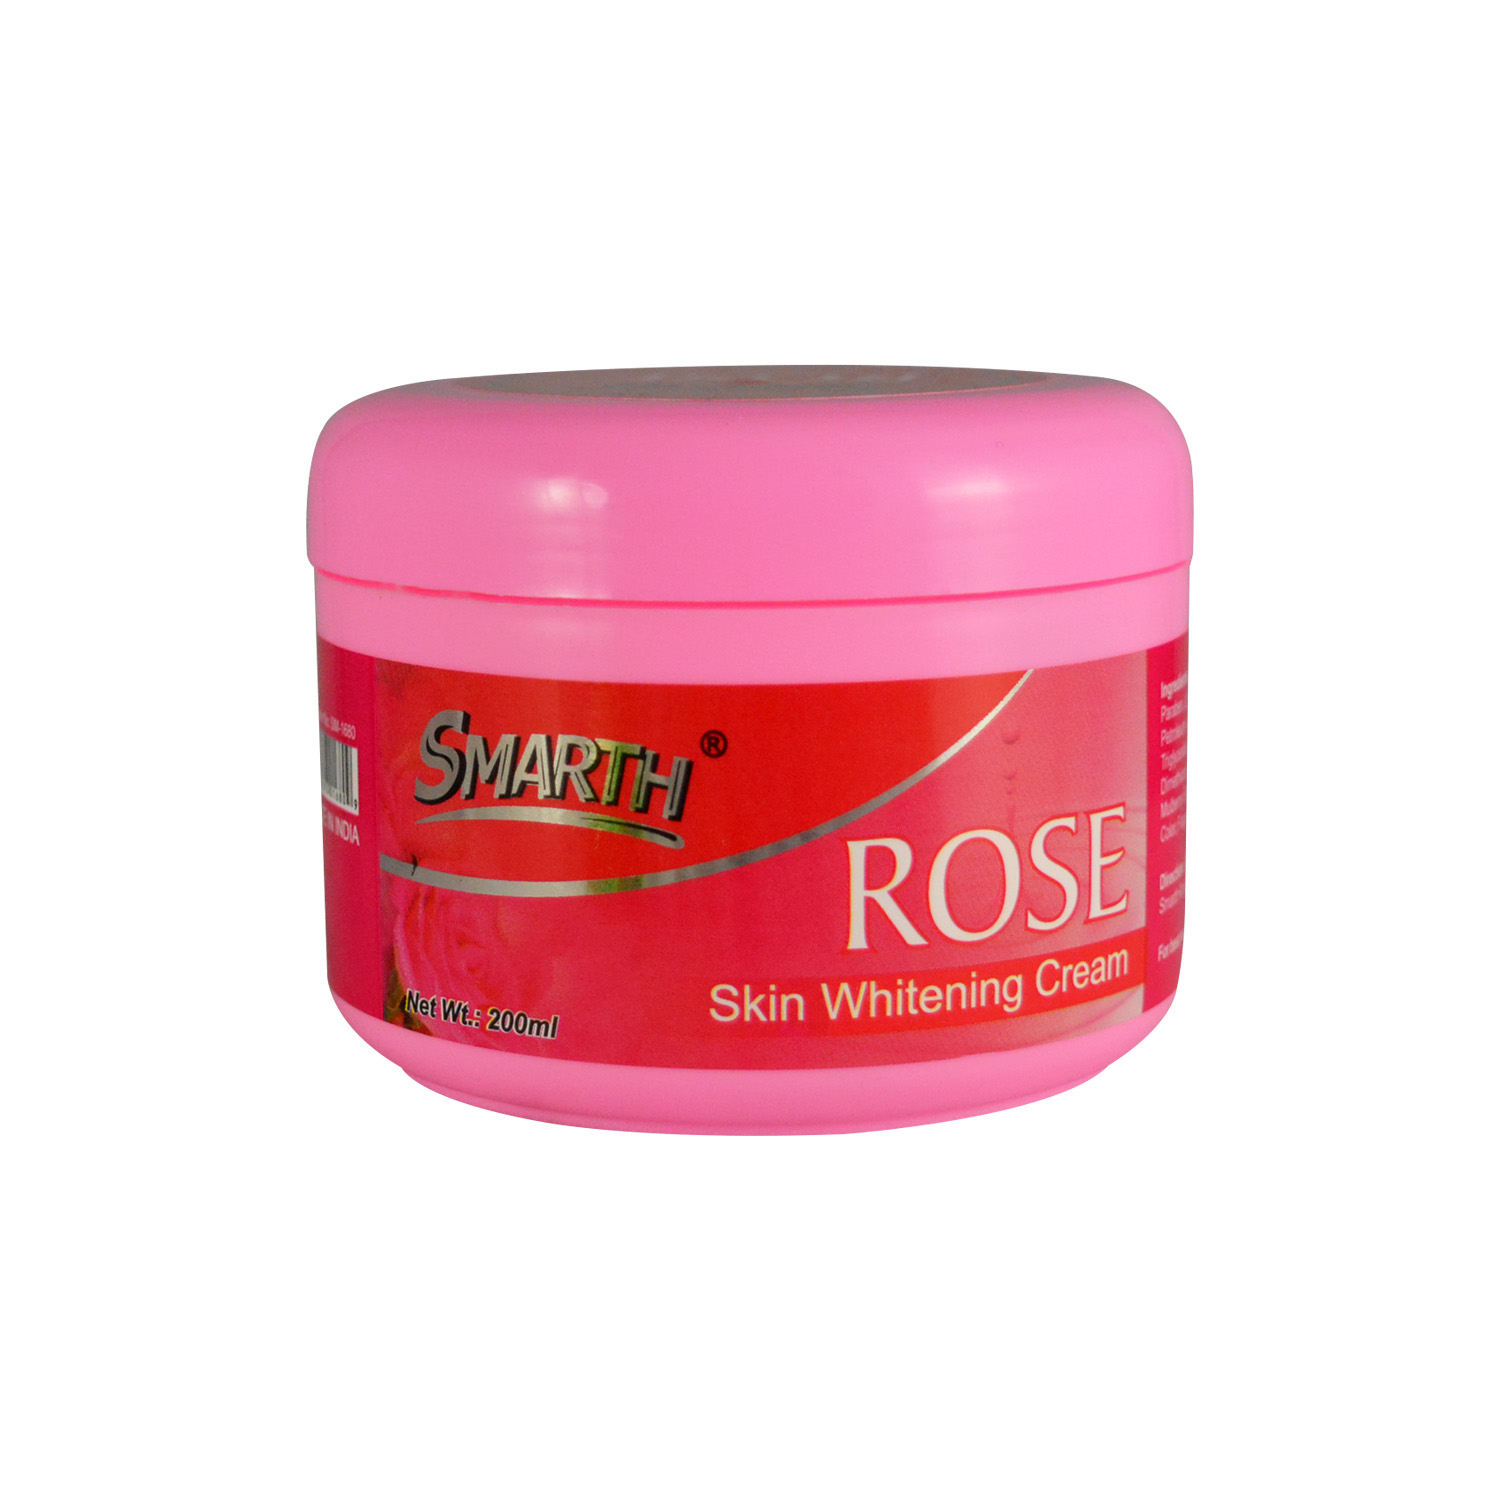 Rose Skin Whitening Cream